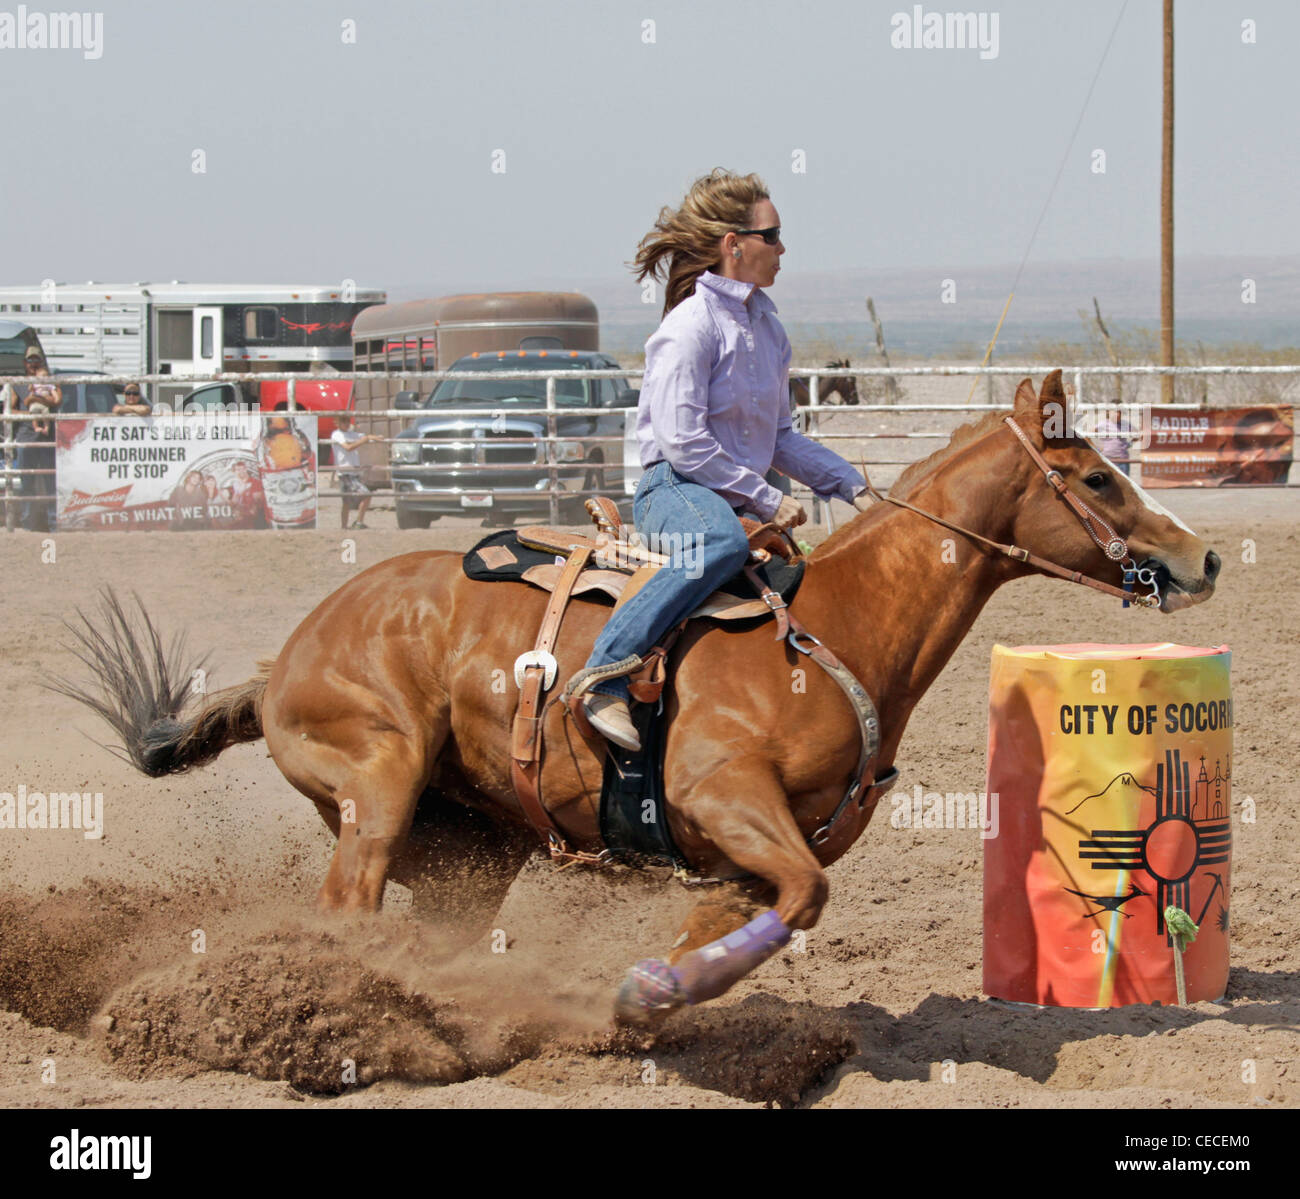 Socorro, Nuovo Messico, Stati Uniti d'America. Donna prendendo parte al Barrel racing evento durante il rodeo annuale tenuto in Socorro, Nuovo Messico. Foto Stock